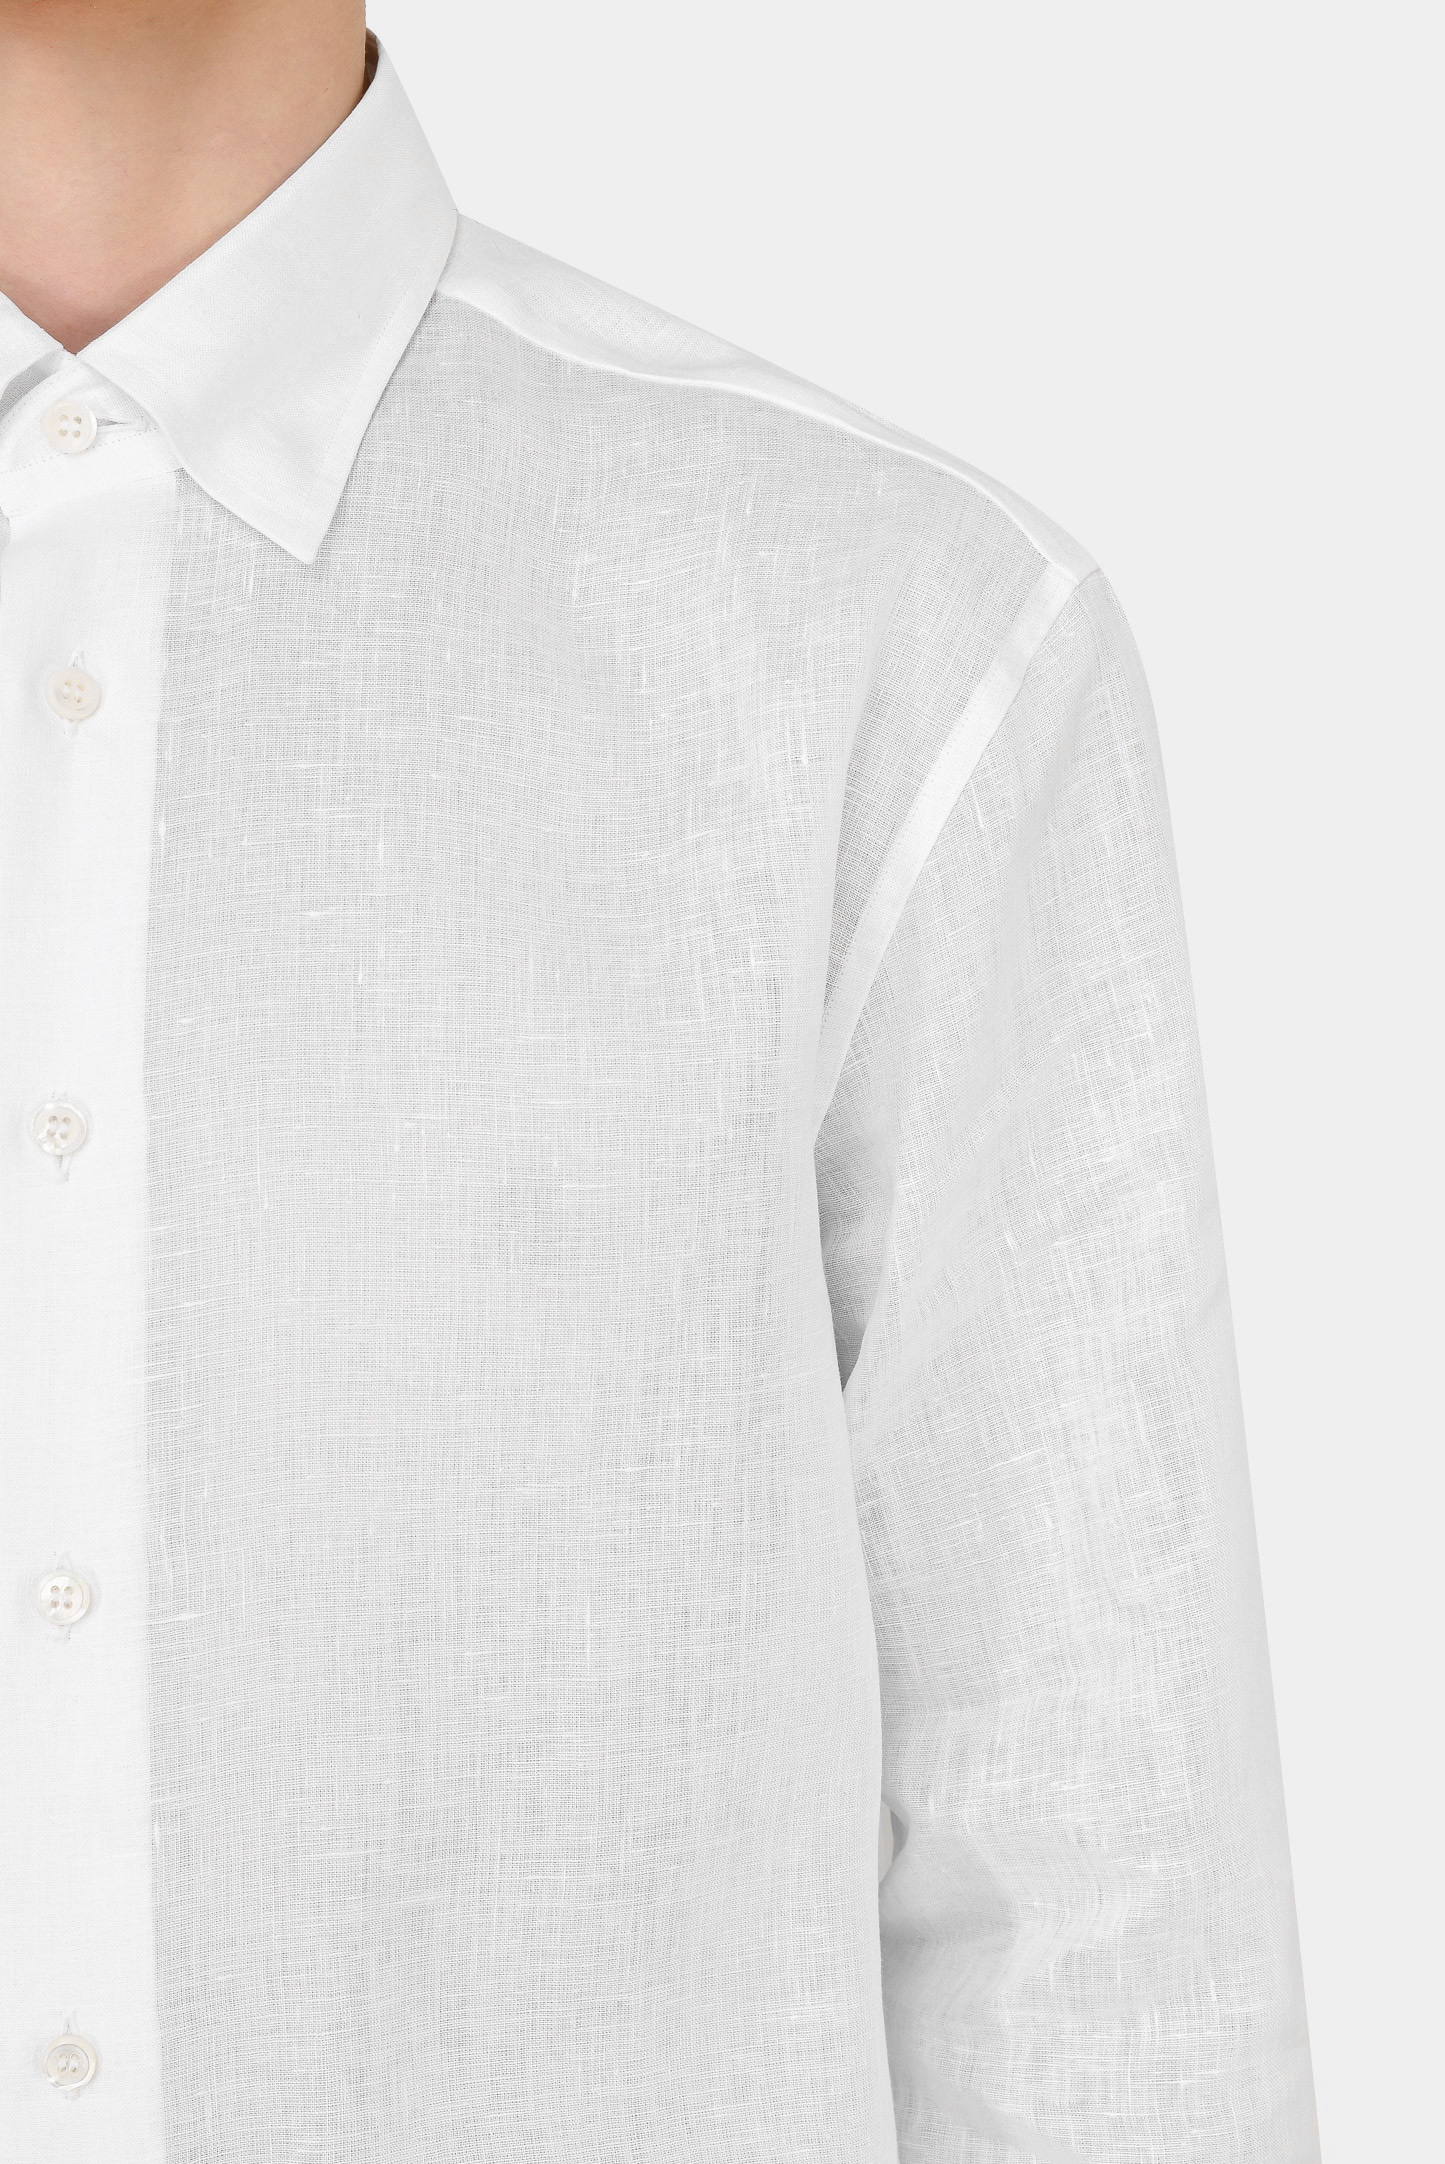 Рубашка BRIONI SCAY0L P9111, цвет: Белый, Мужской